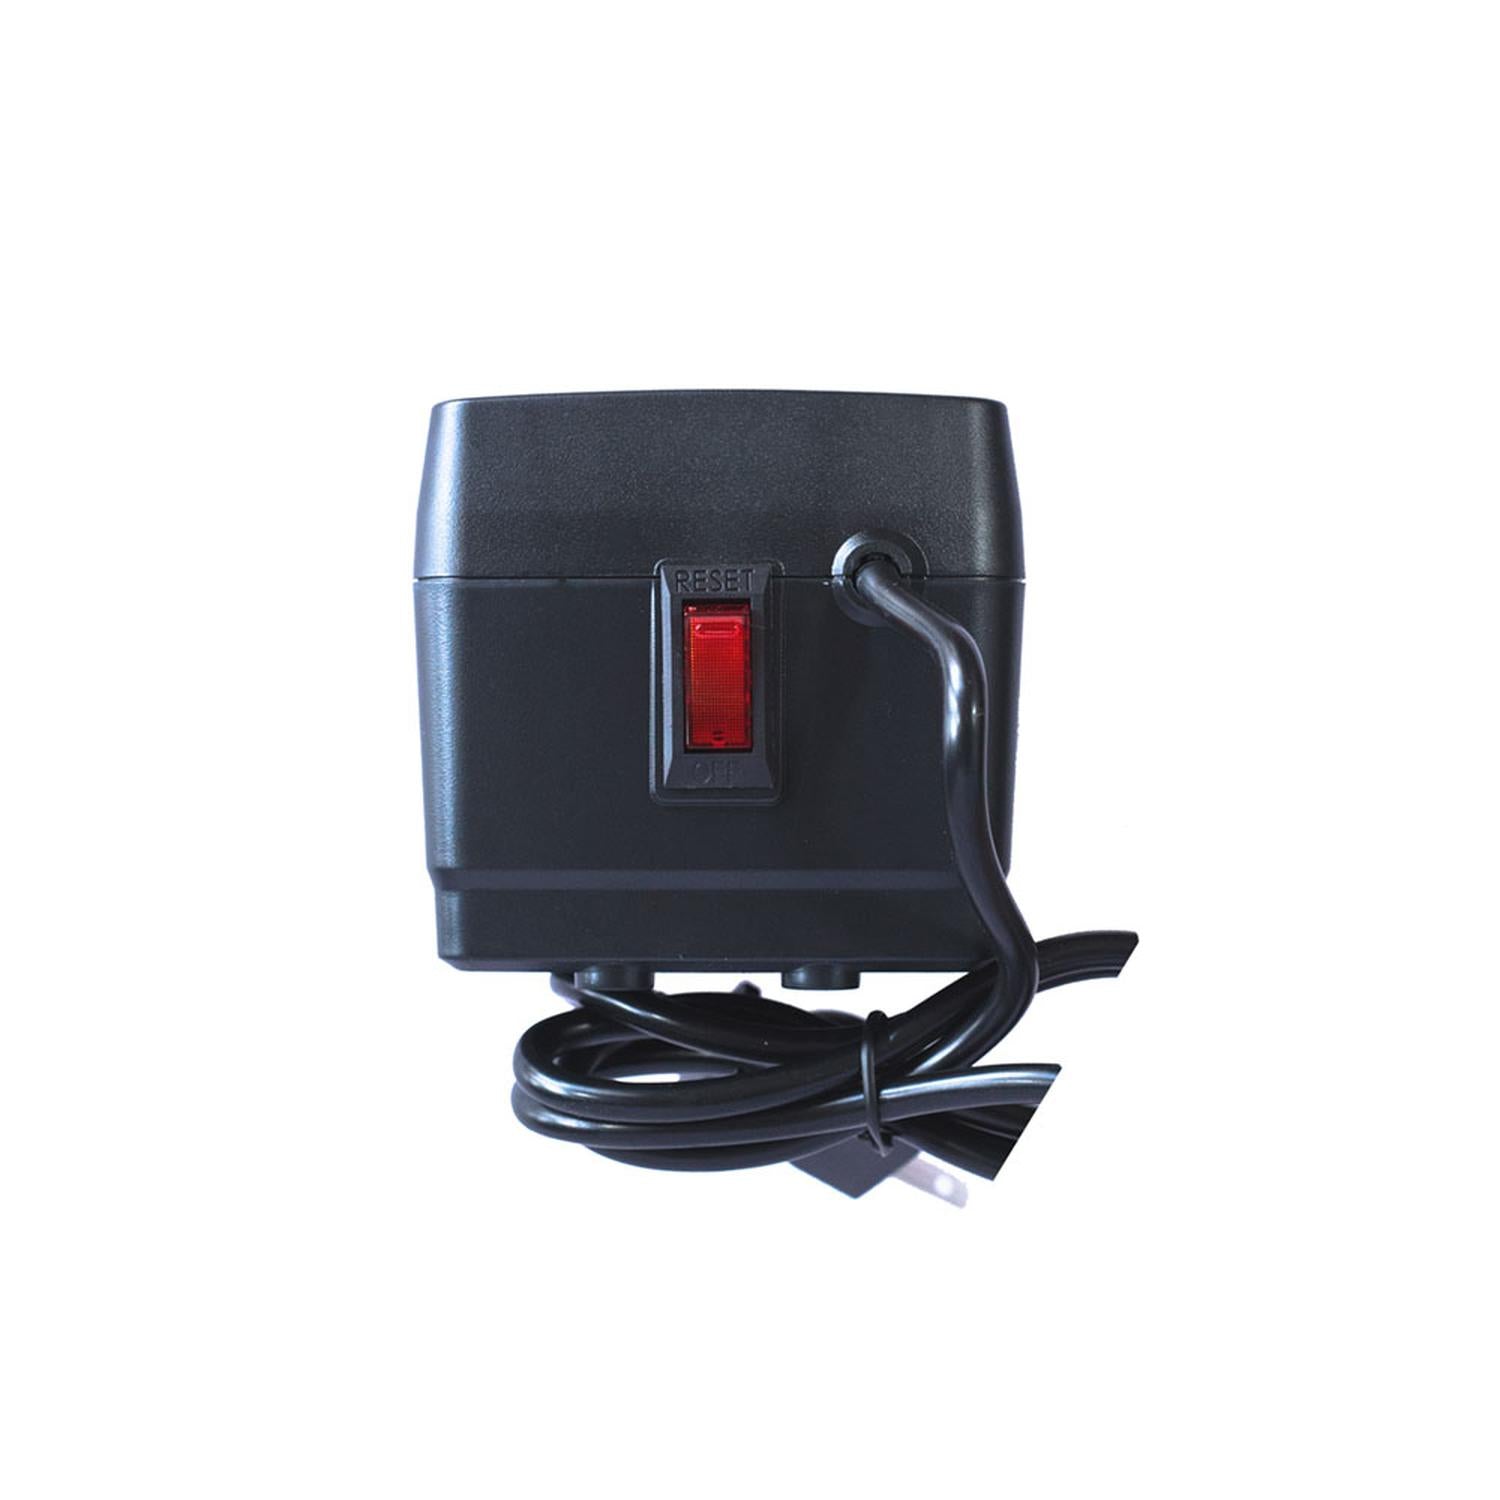 Regulador de Voltaje Smartbitt 8 Contactos 1350 VA / 675 W